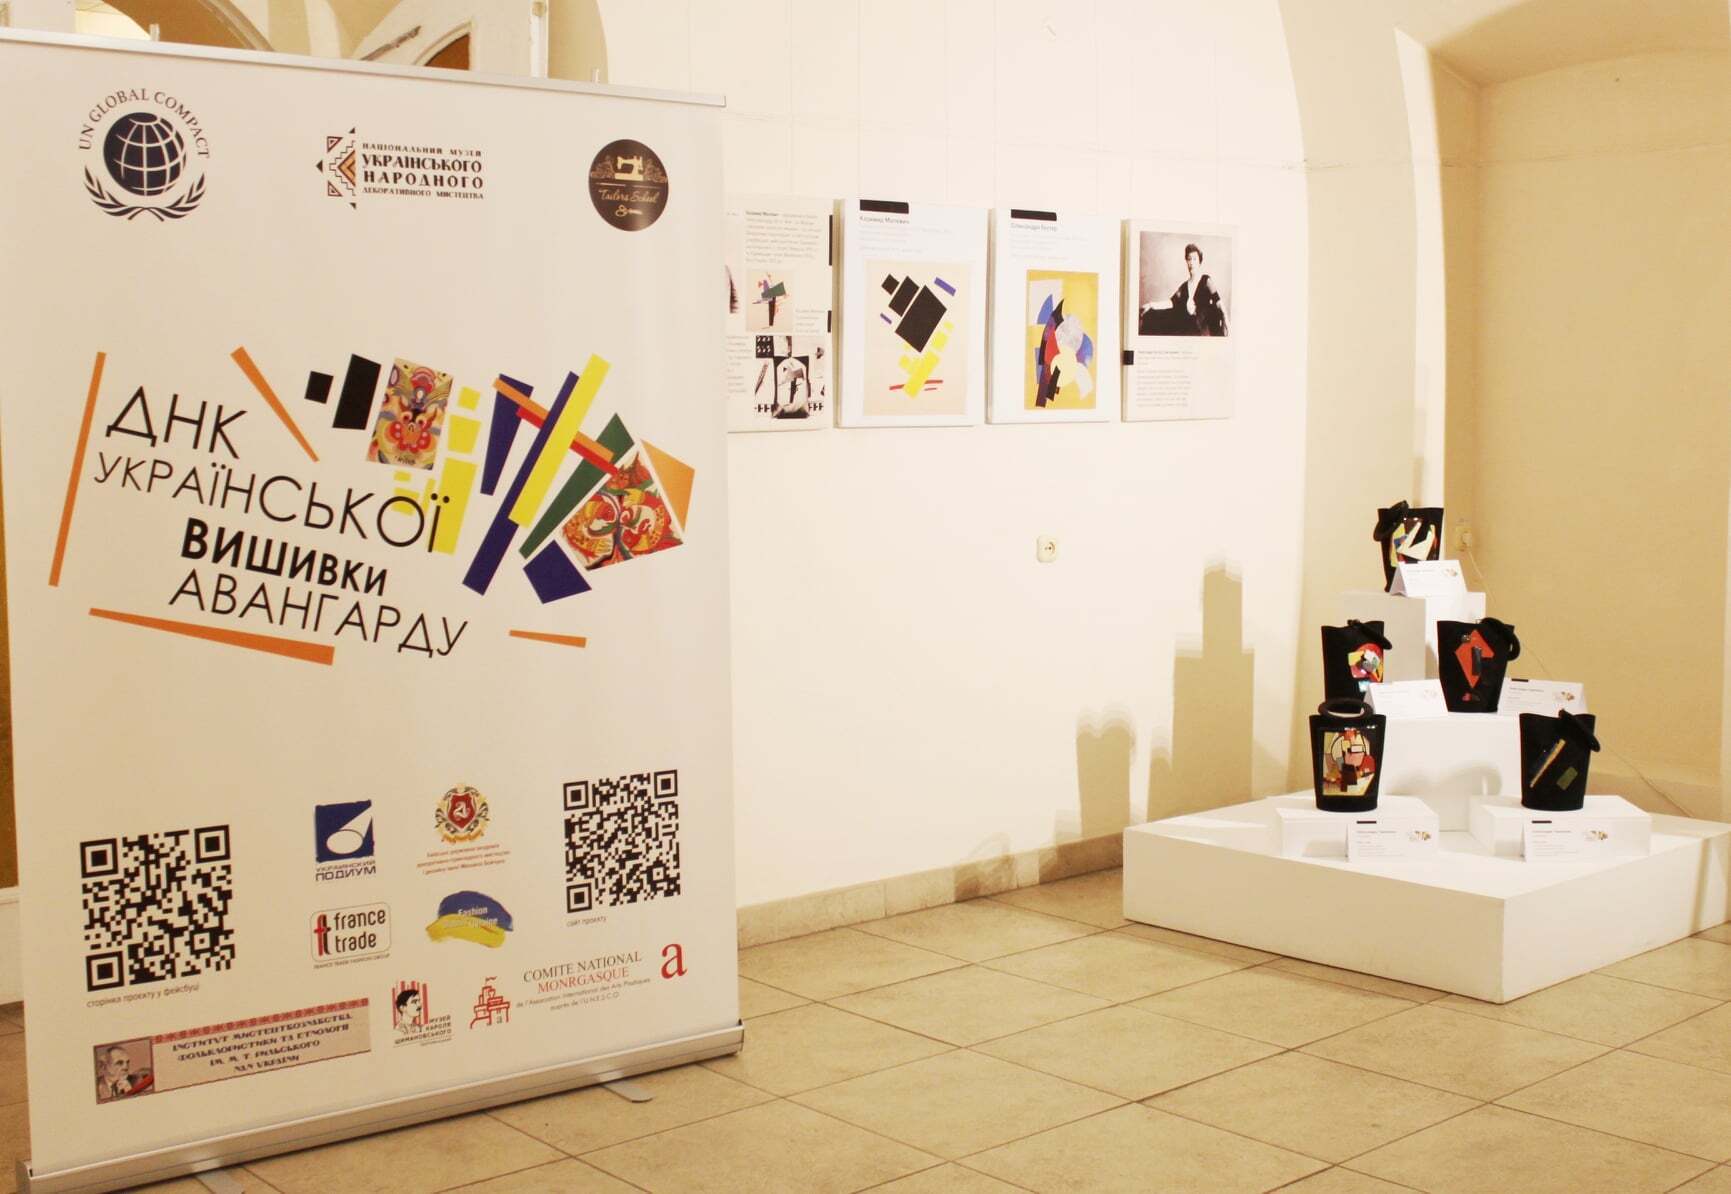 Выставка ''ДНК украинской вышивки авангарда